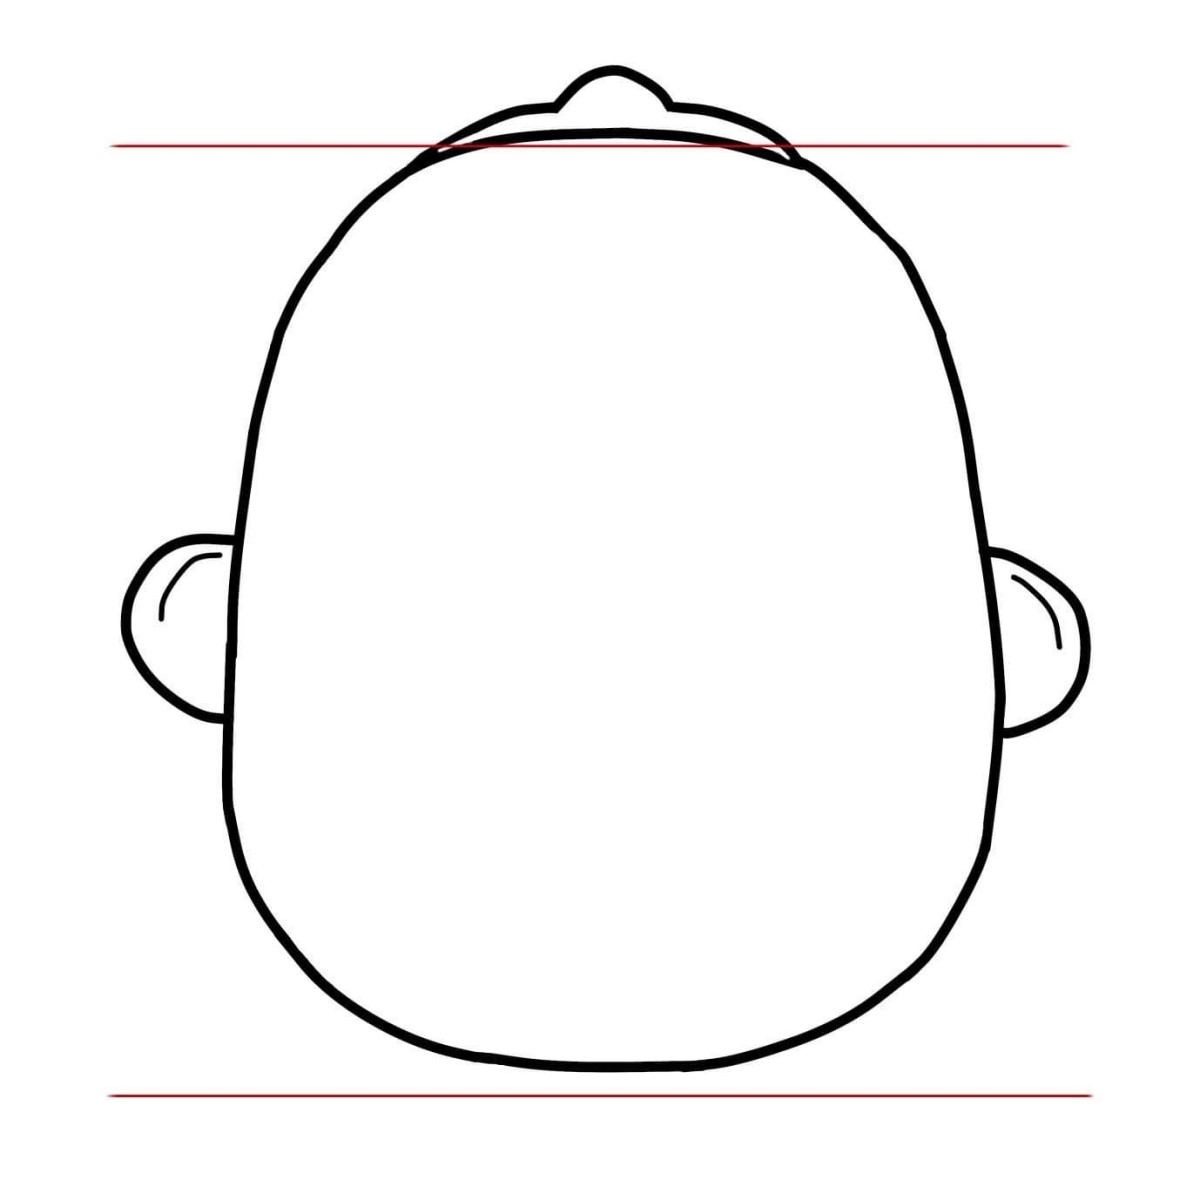 normální symetrický tvar lebky dítěte.